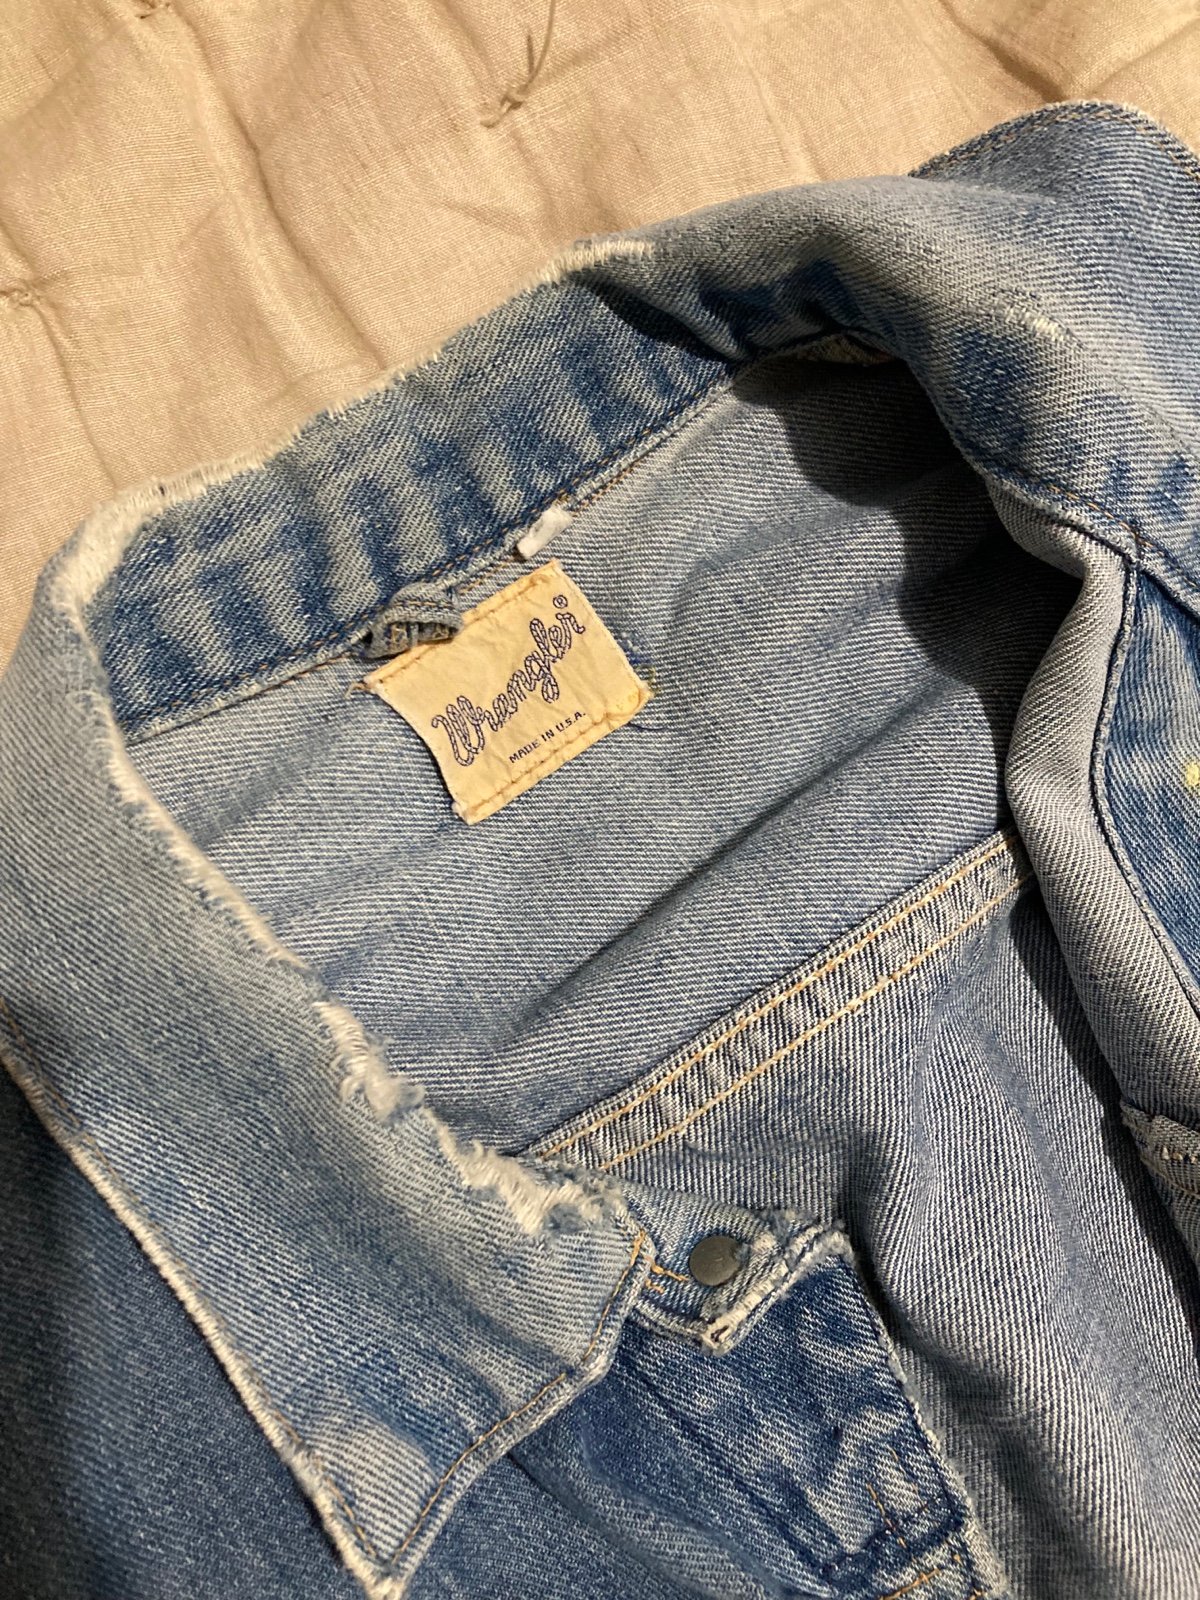 Gorgeous Vintage Wrangler jean jacket IpYVkrDuS outlet online shop